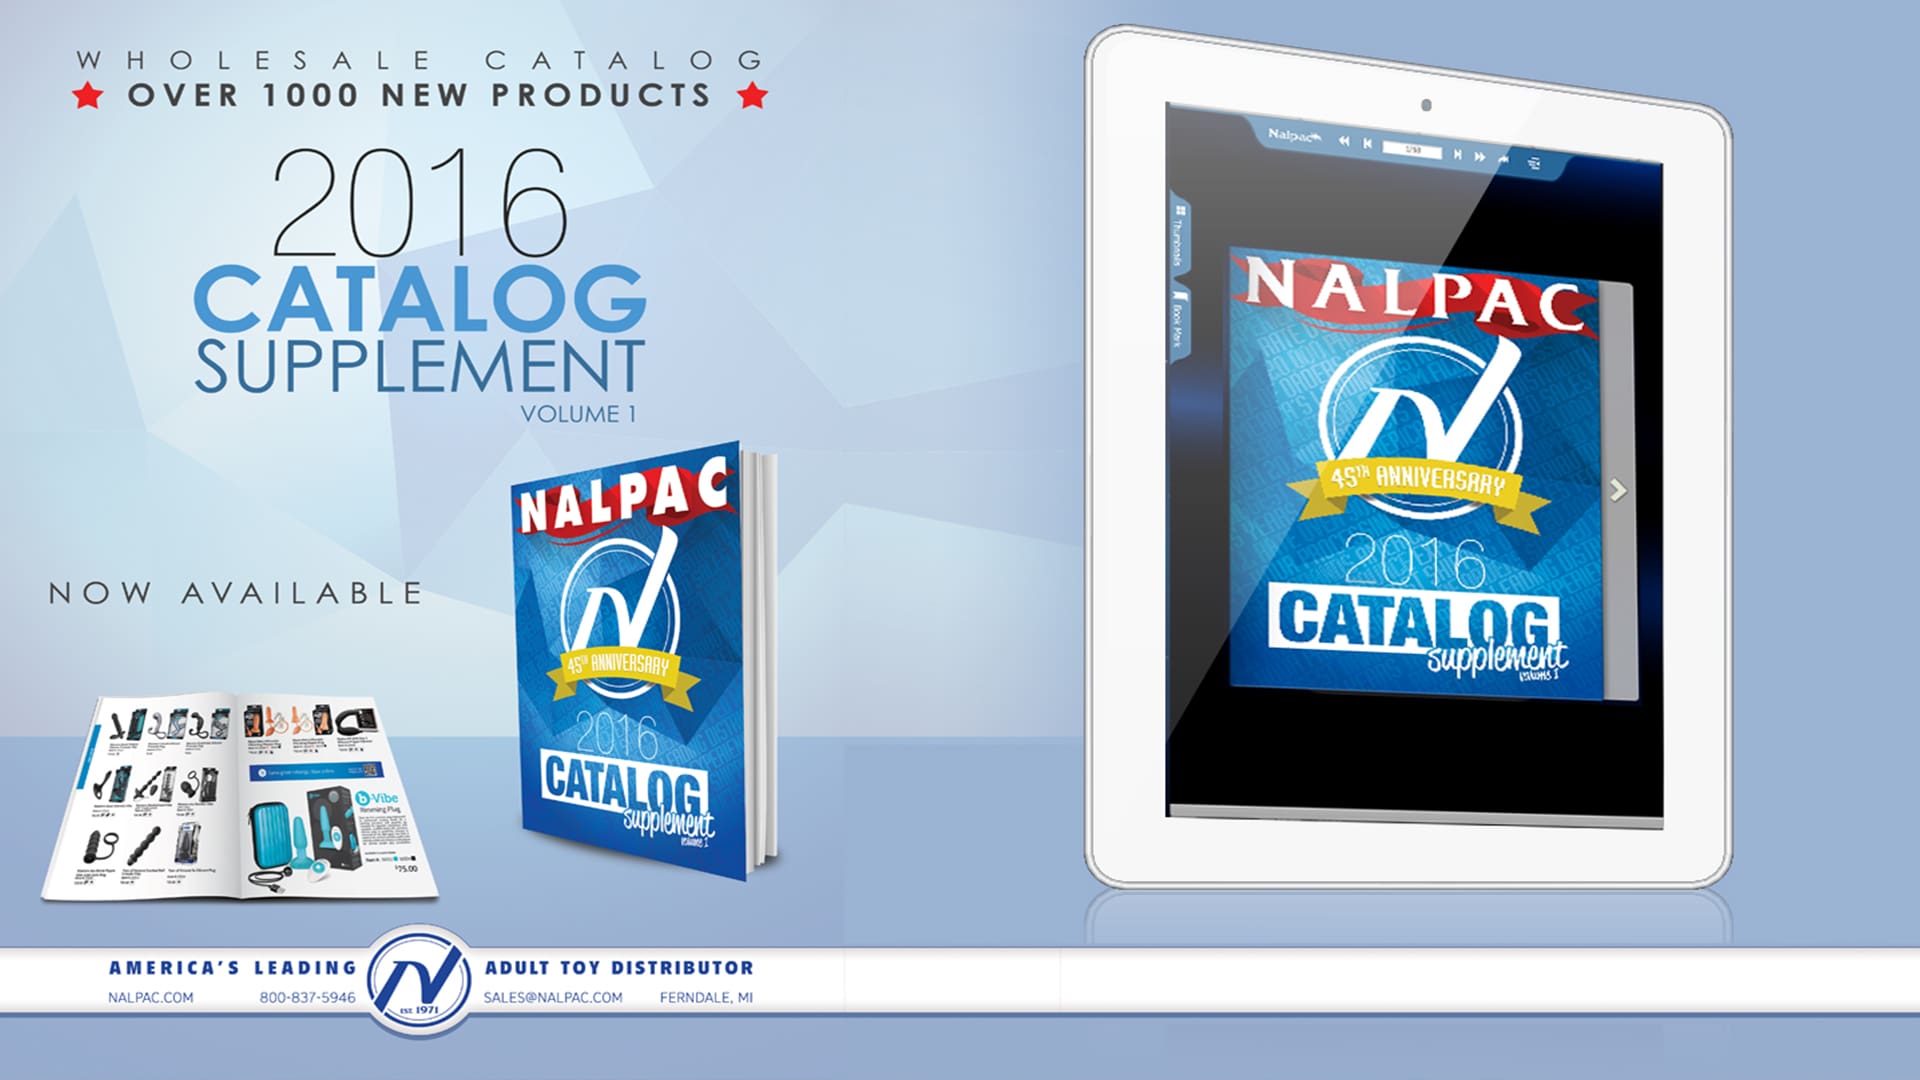 Nalpac Distributor Branding and Print Material 